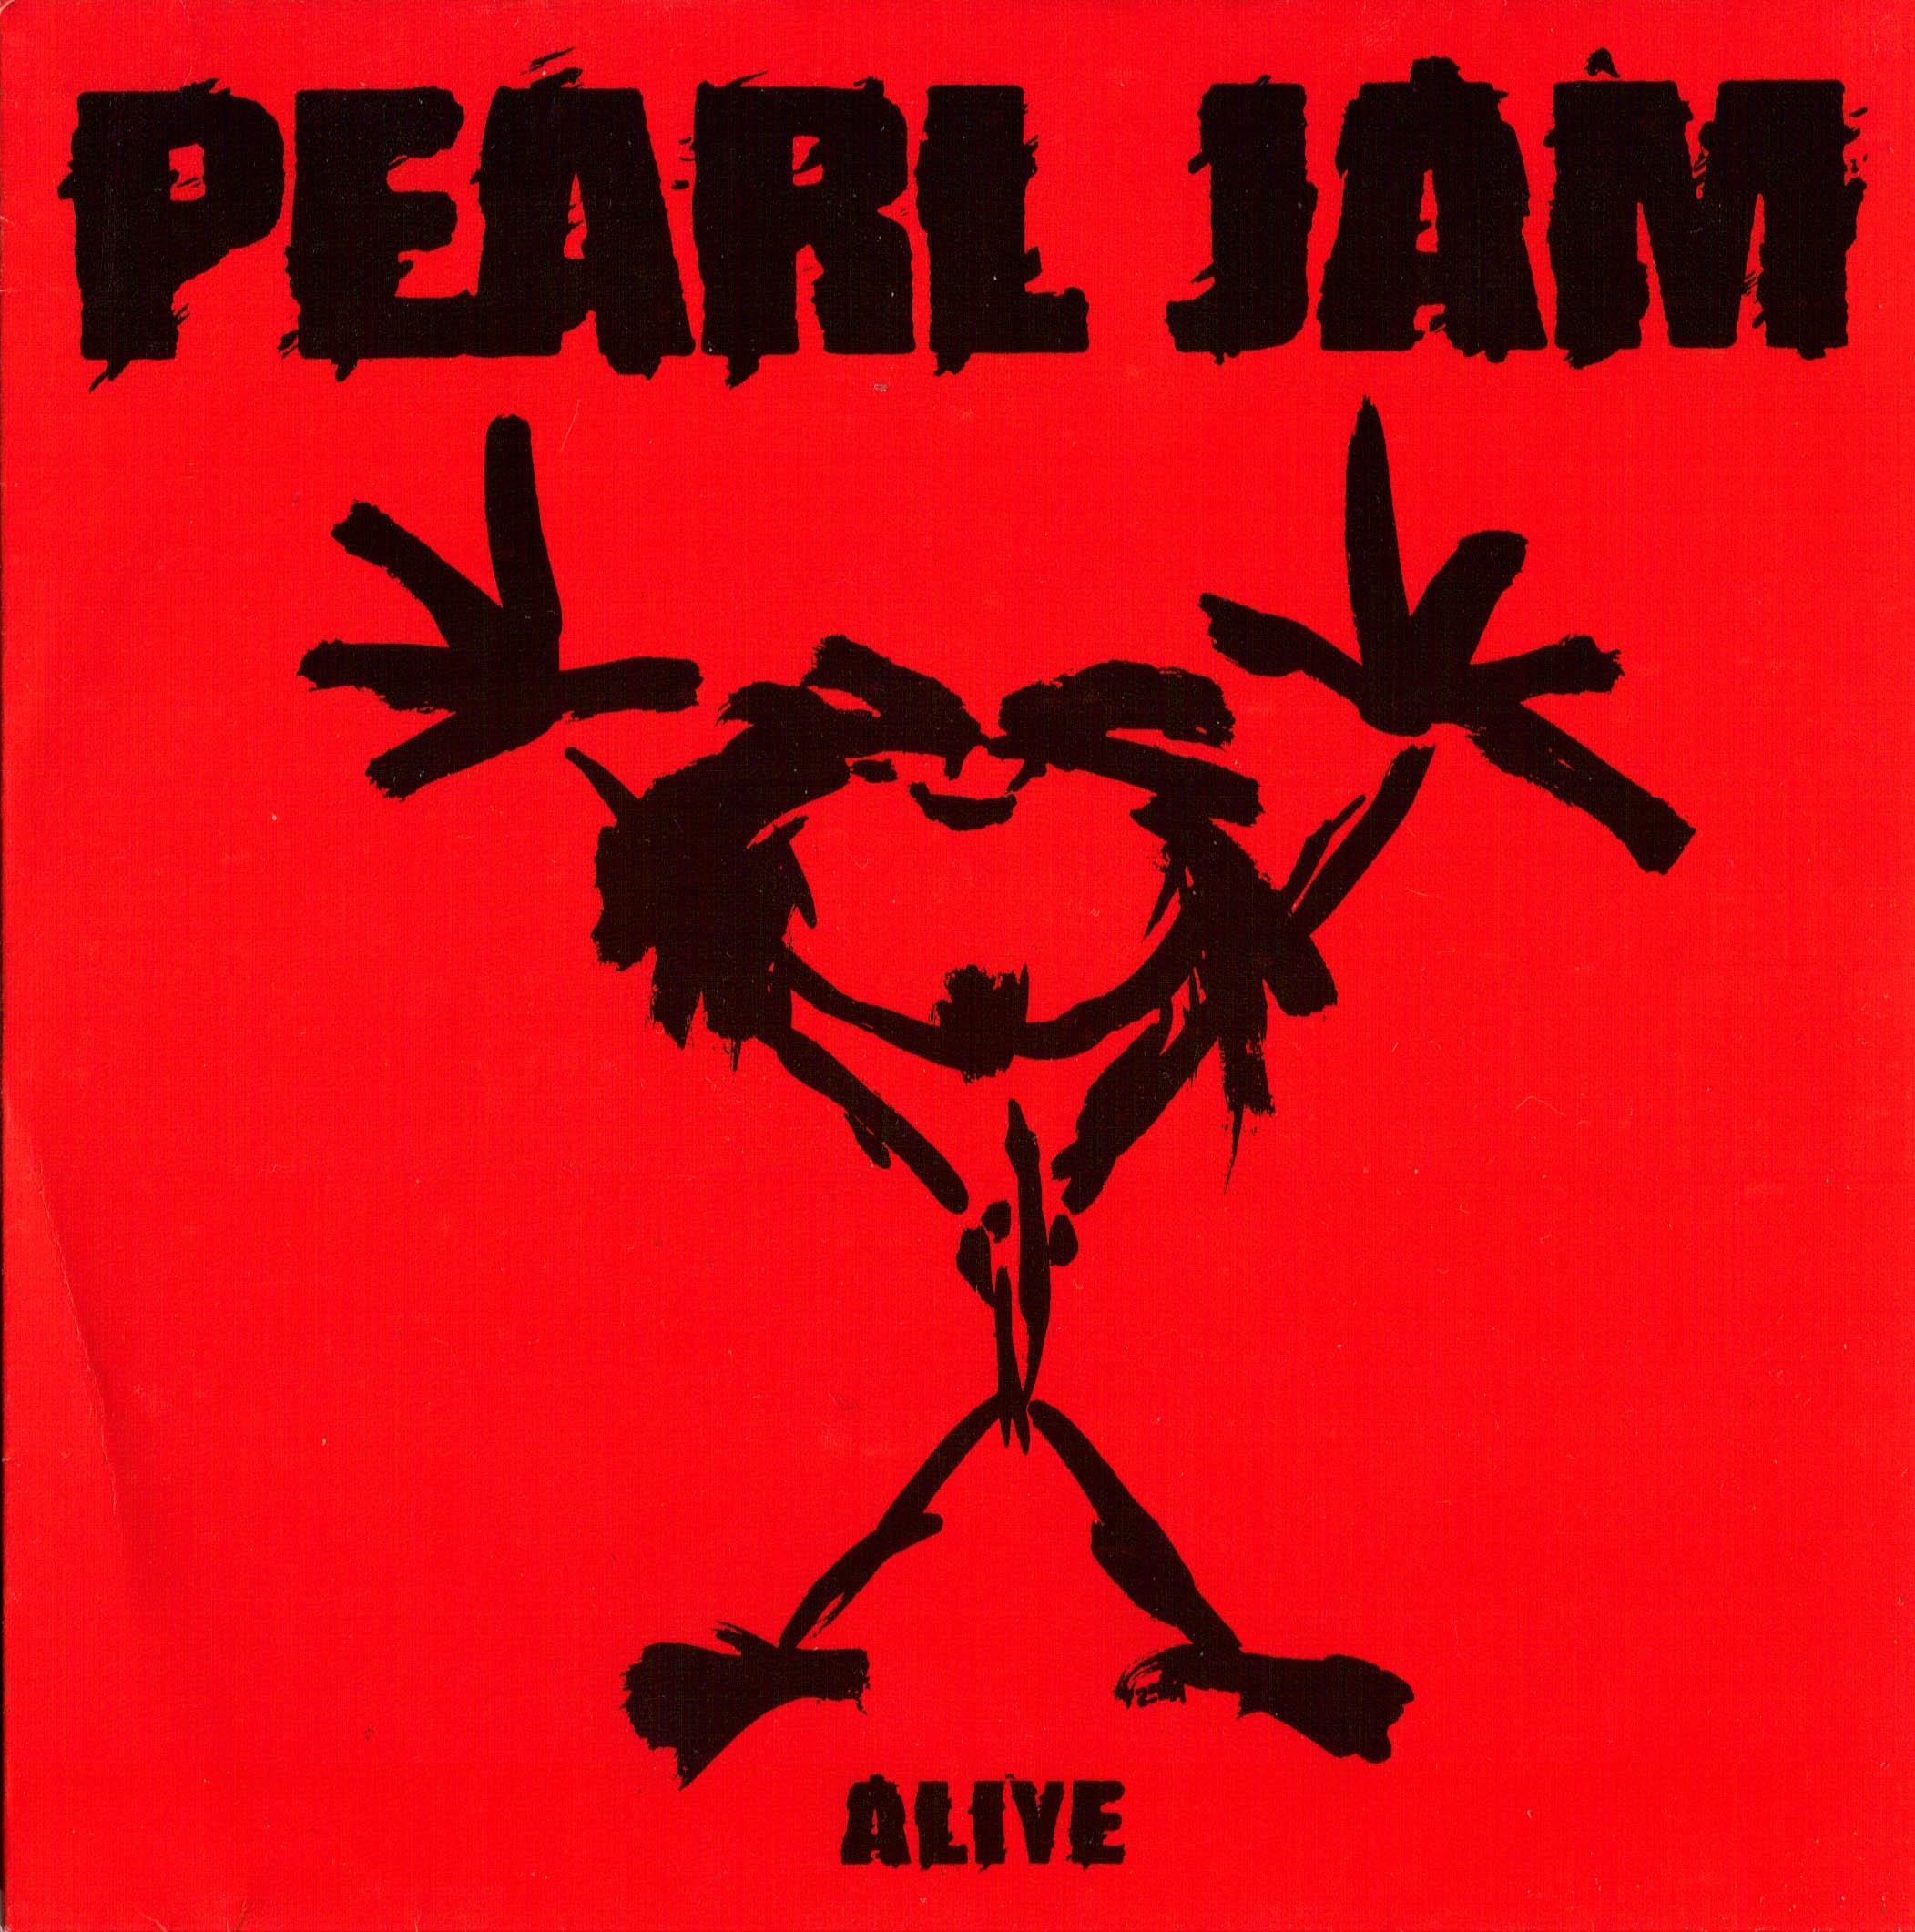 Pearl Jam Stickman Logo - Pearl Jam Stickman Logo